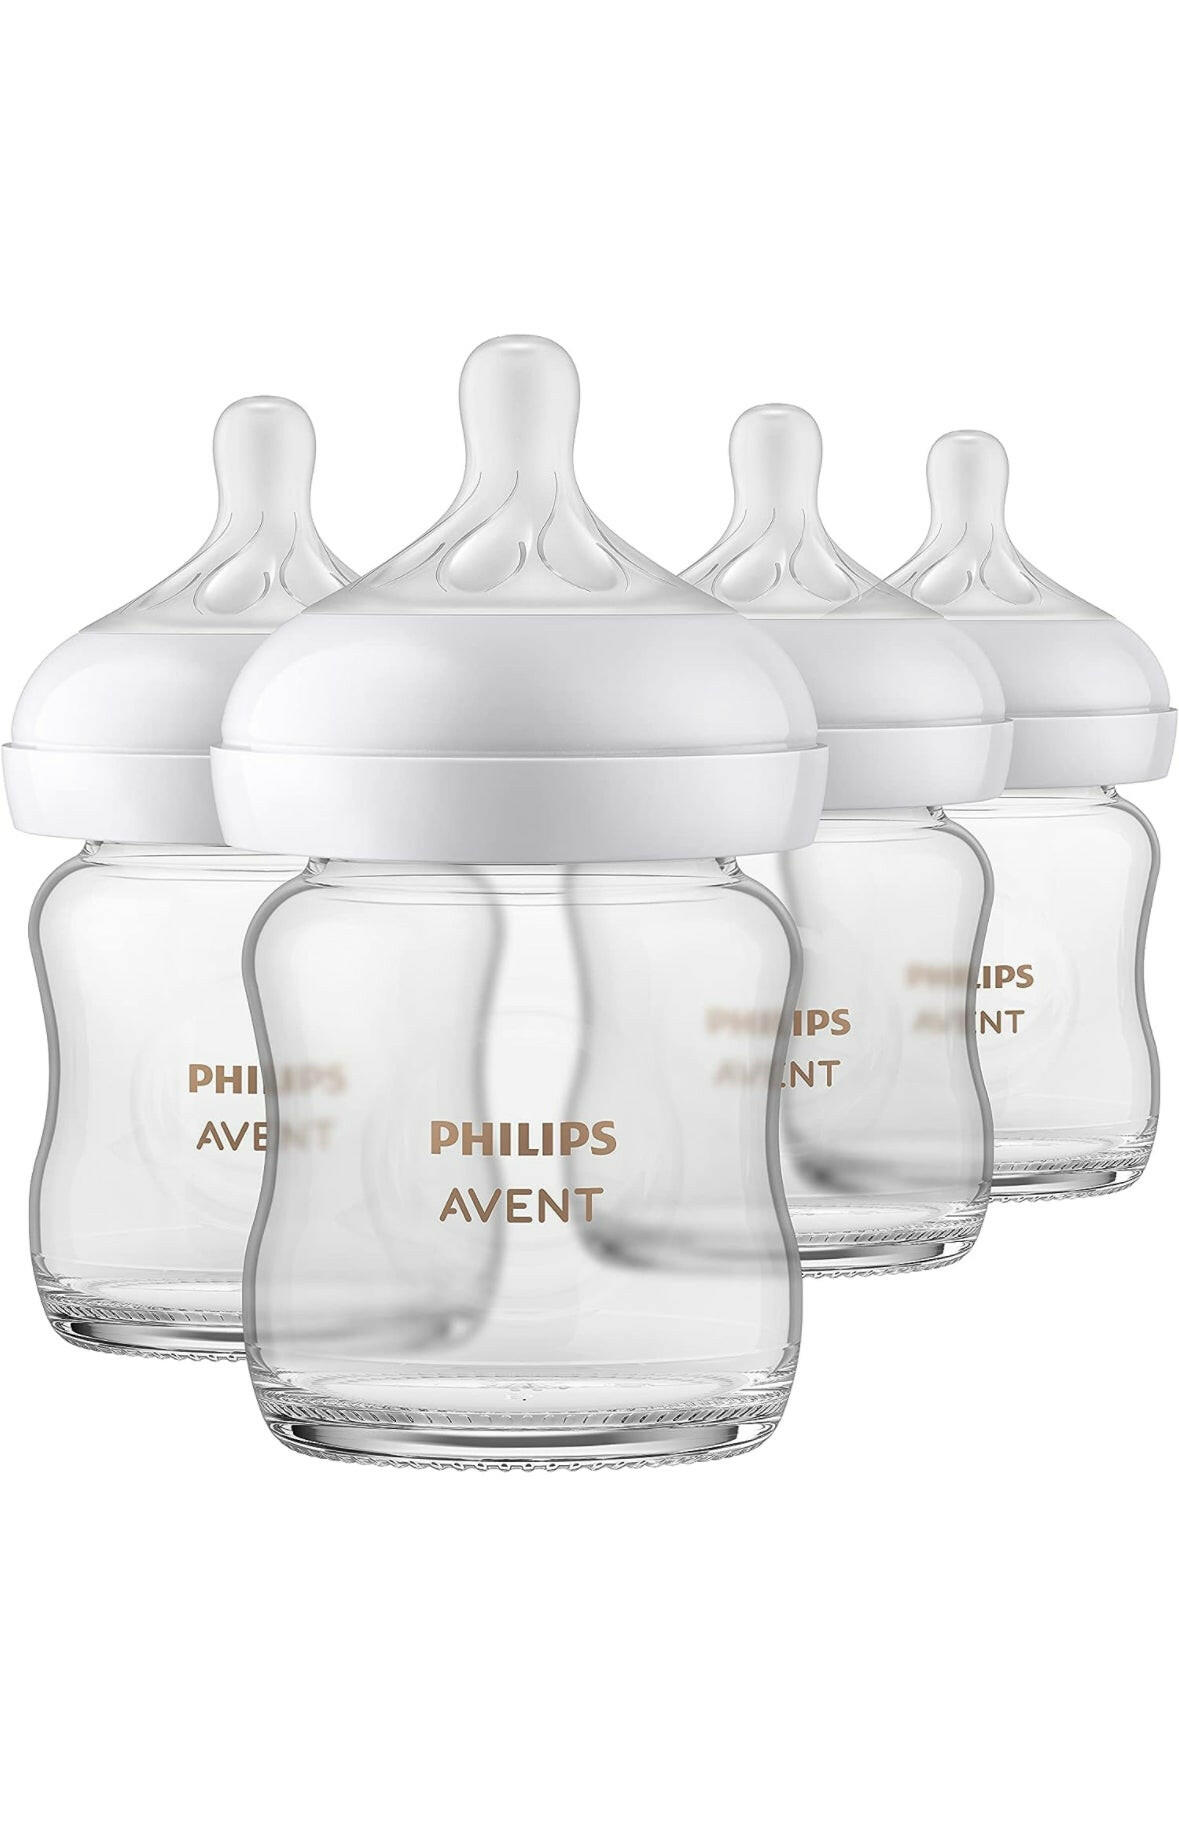 زجاجة أطفال زجاجية طبيعية من فيليبس أفينت مع حلمة استجابة طبيعية، شفافة، 4 أونصة، 4 قطع